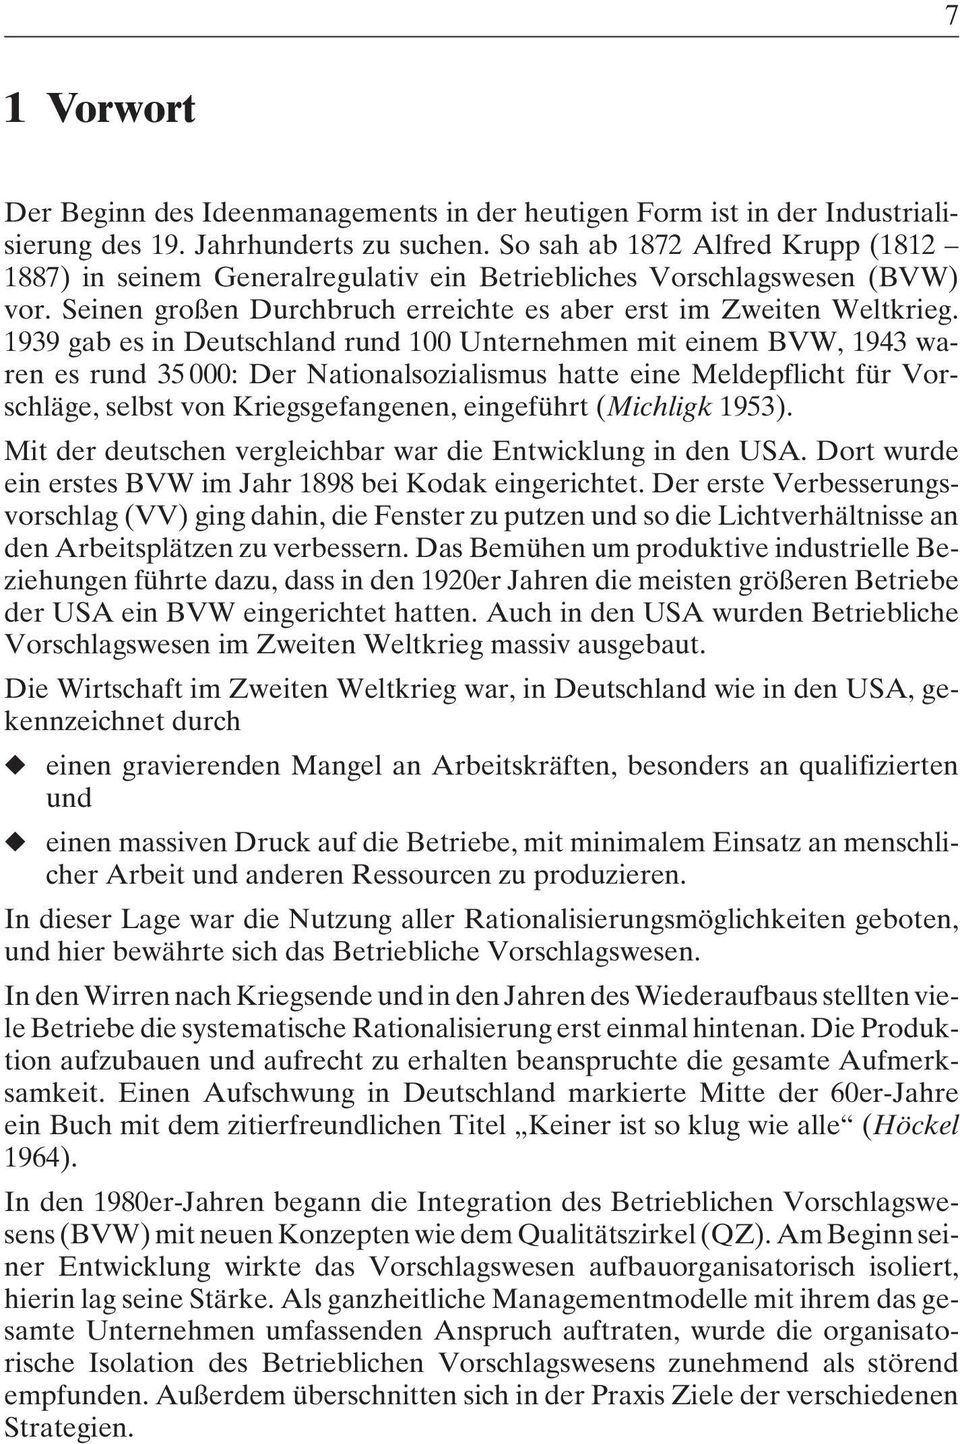 1939 gab es in Deutschland rund 100 Unternehmen mit einem BVW, 1943 waren es rund 35 000: Der Nationalsozialismus hatte eine Meldepflicht für Vorschläge, selbst von Kriegsgefangenen, eingeführt